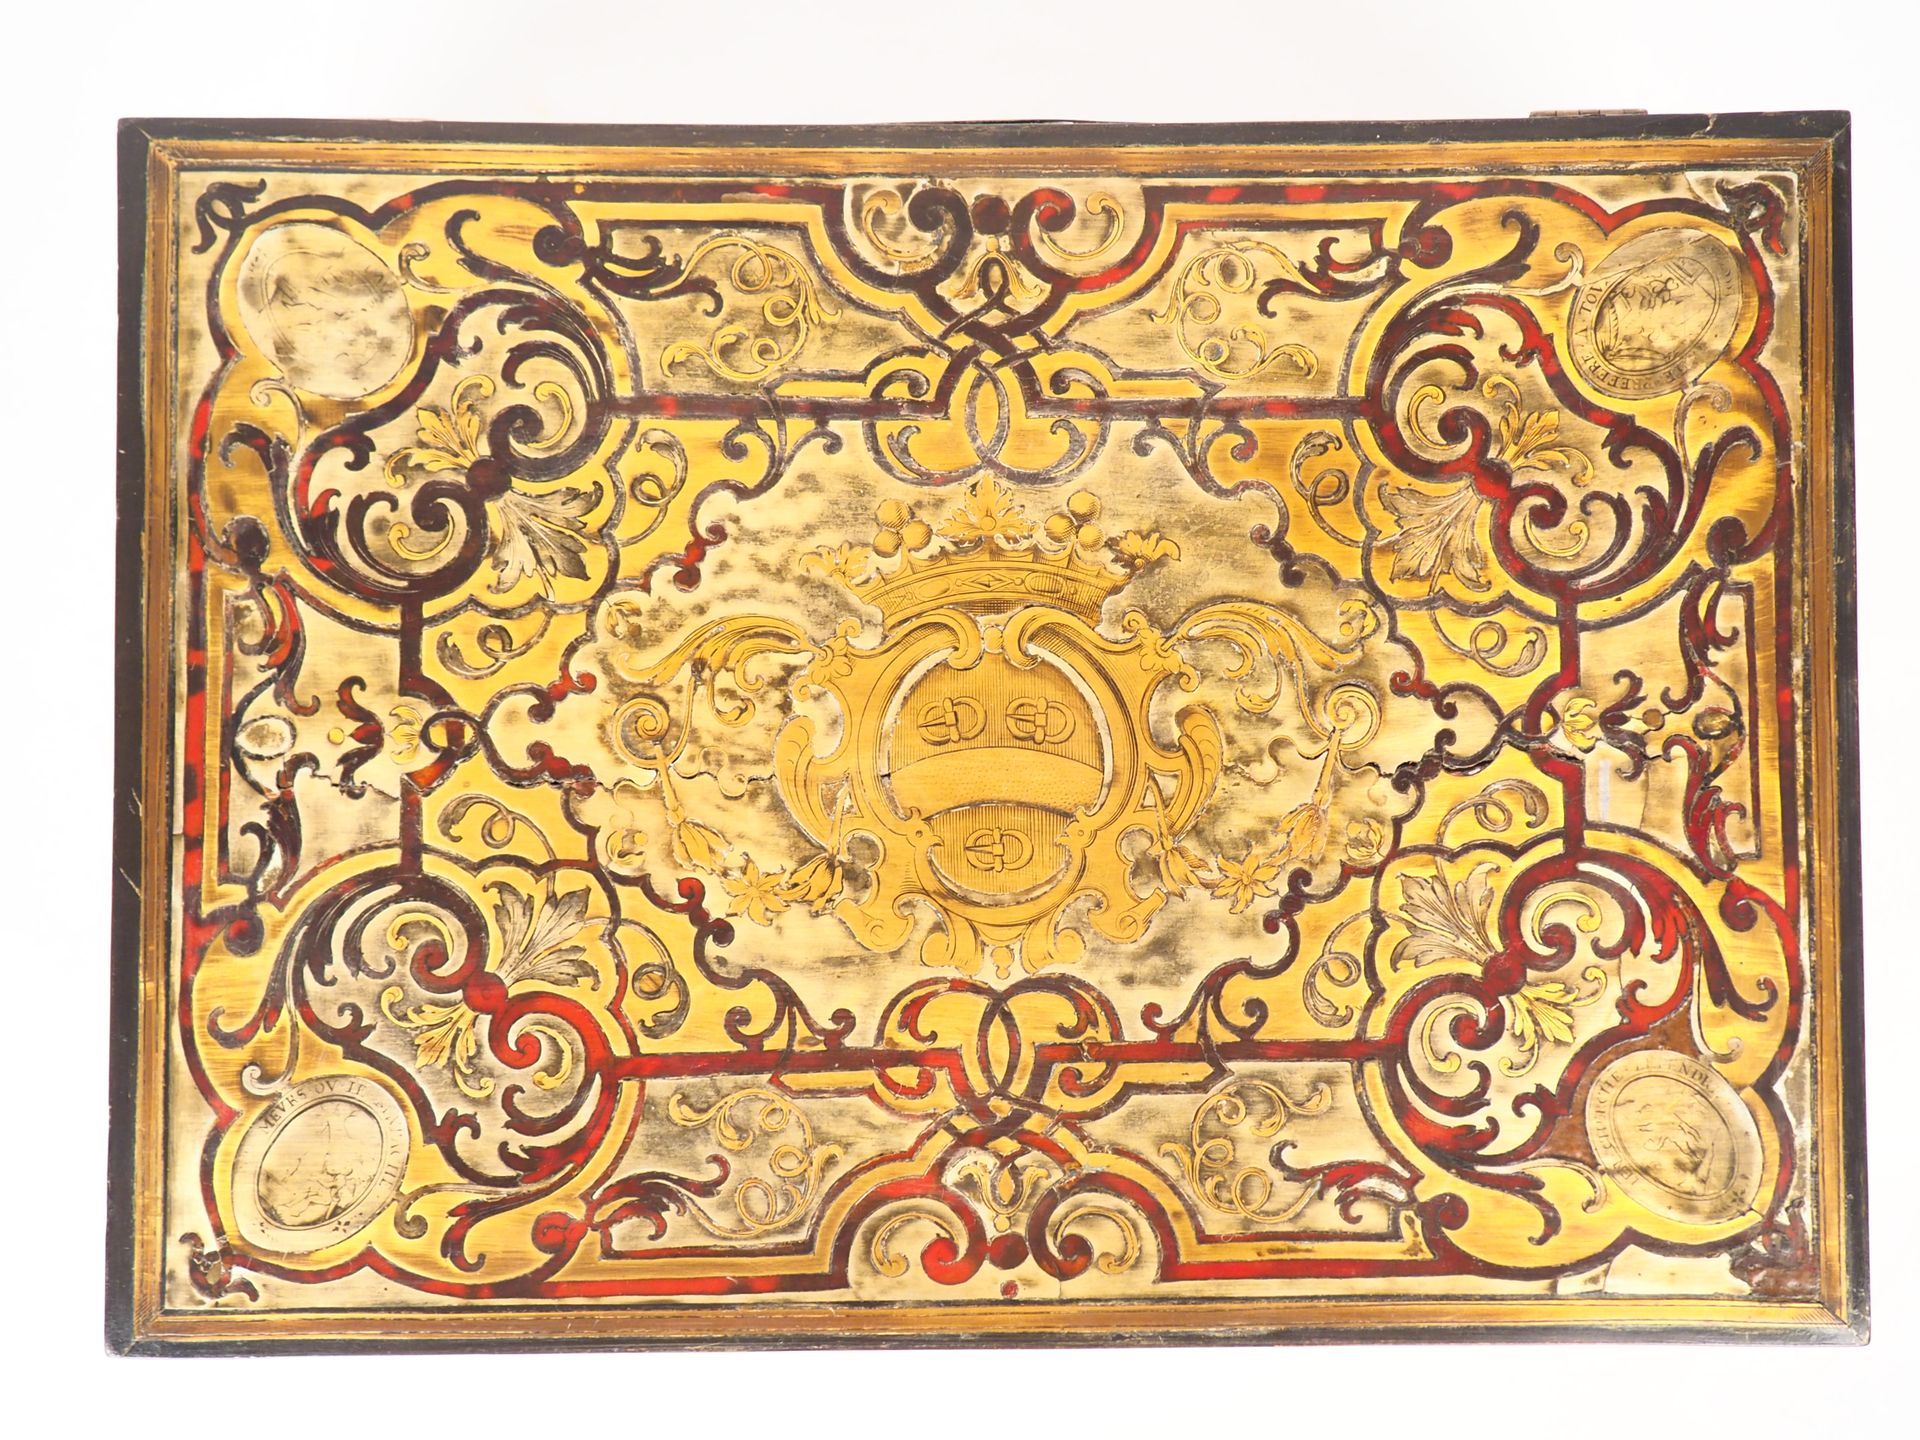 Null 拿破仑三世风格的Boulle镶嵌盒。

尺寸：11 x 33,5 x 24 厘米

(磨损和修复）。